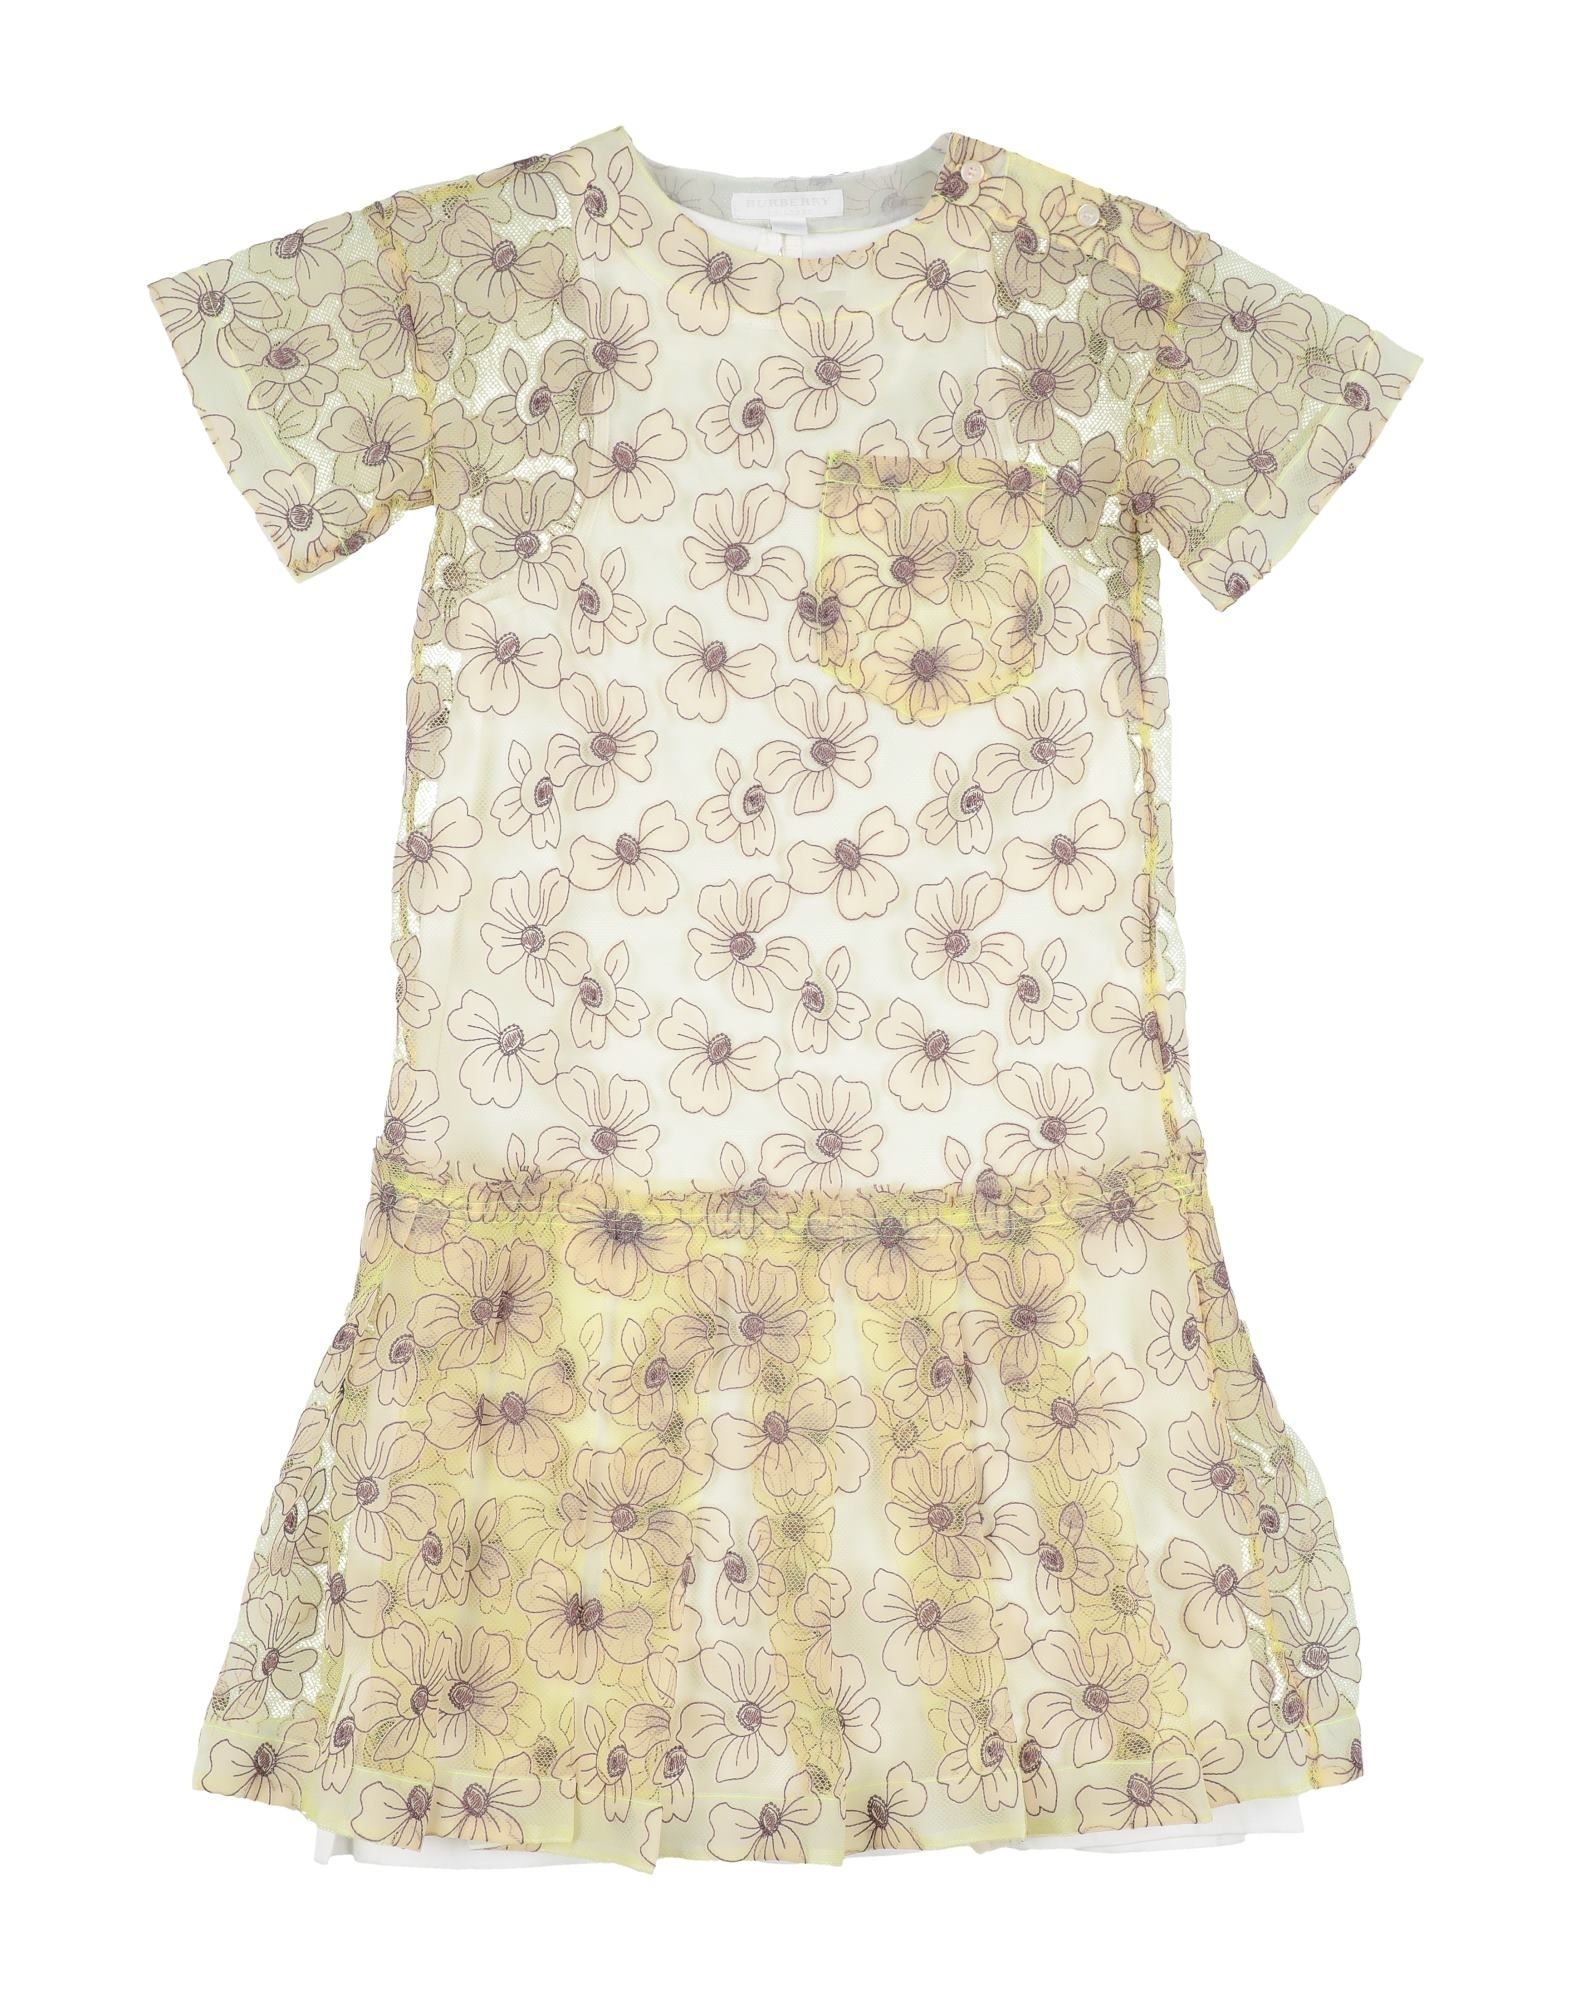 BURBERRY ΦΟΡΕΜΑΤΑ Παιδικό φόρεμα